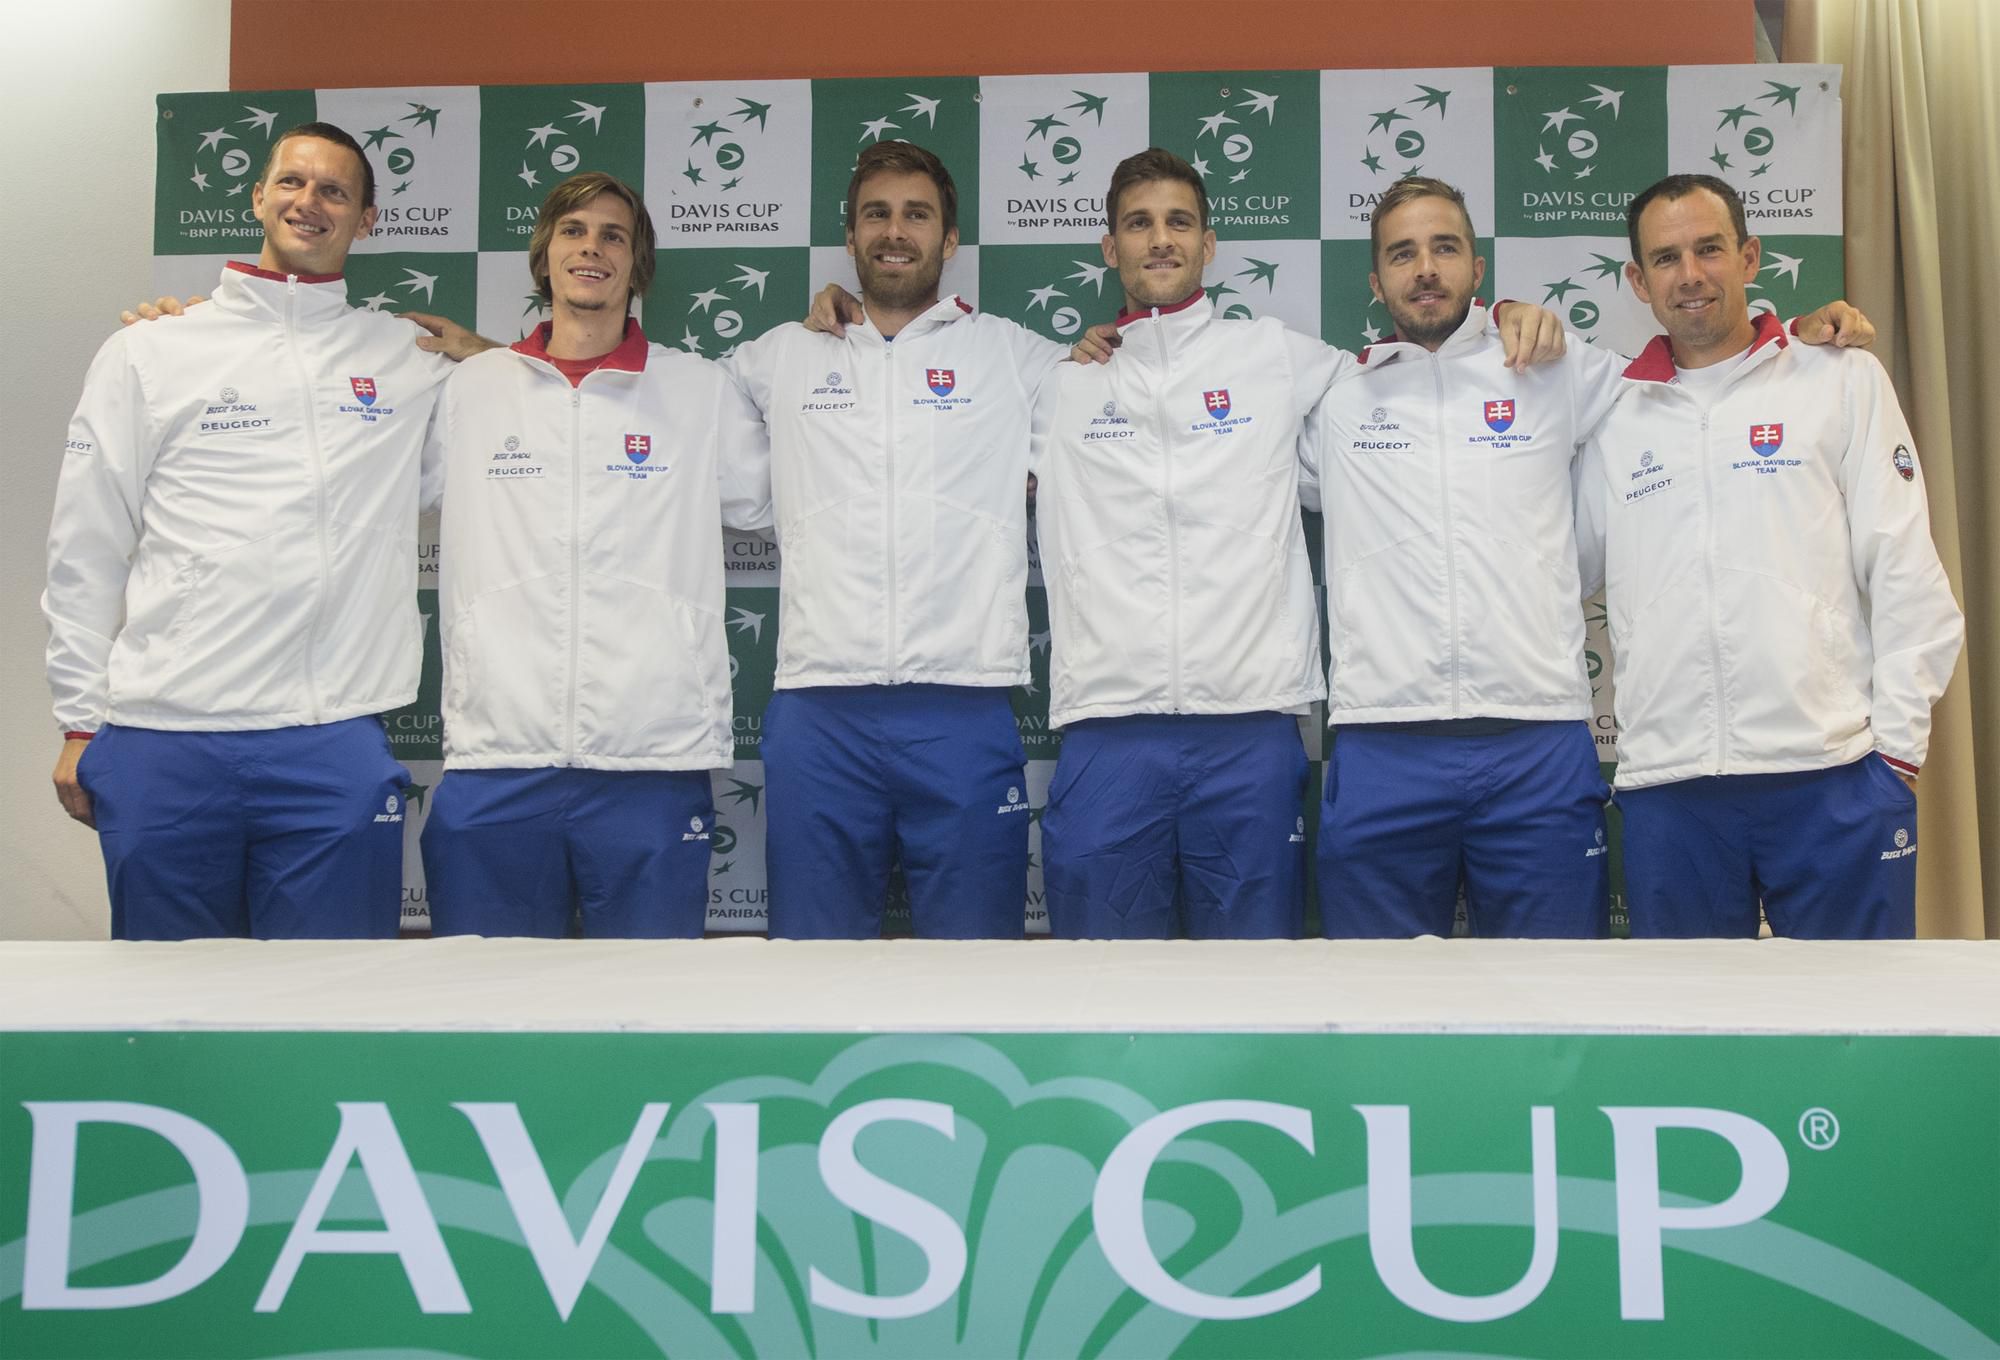 slovenský daviscupový tím